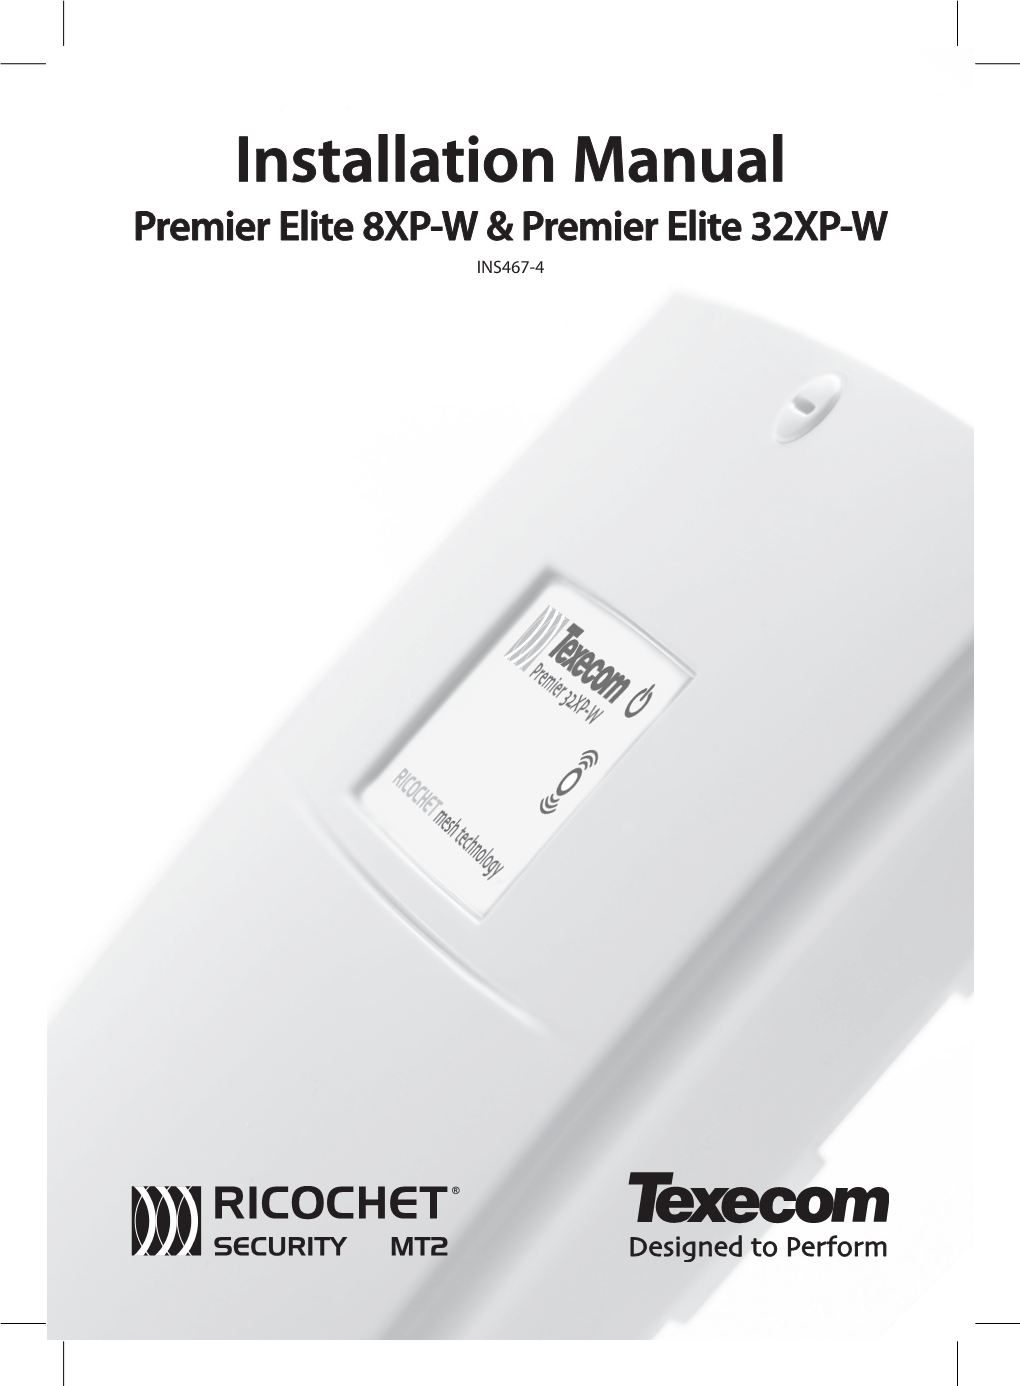 Premier 32XP-W Manual